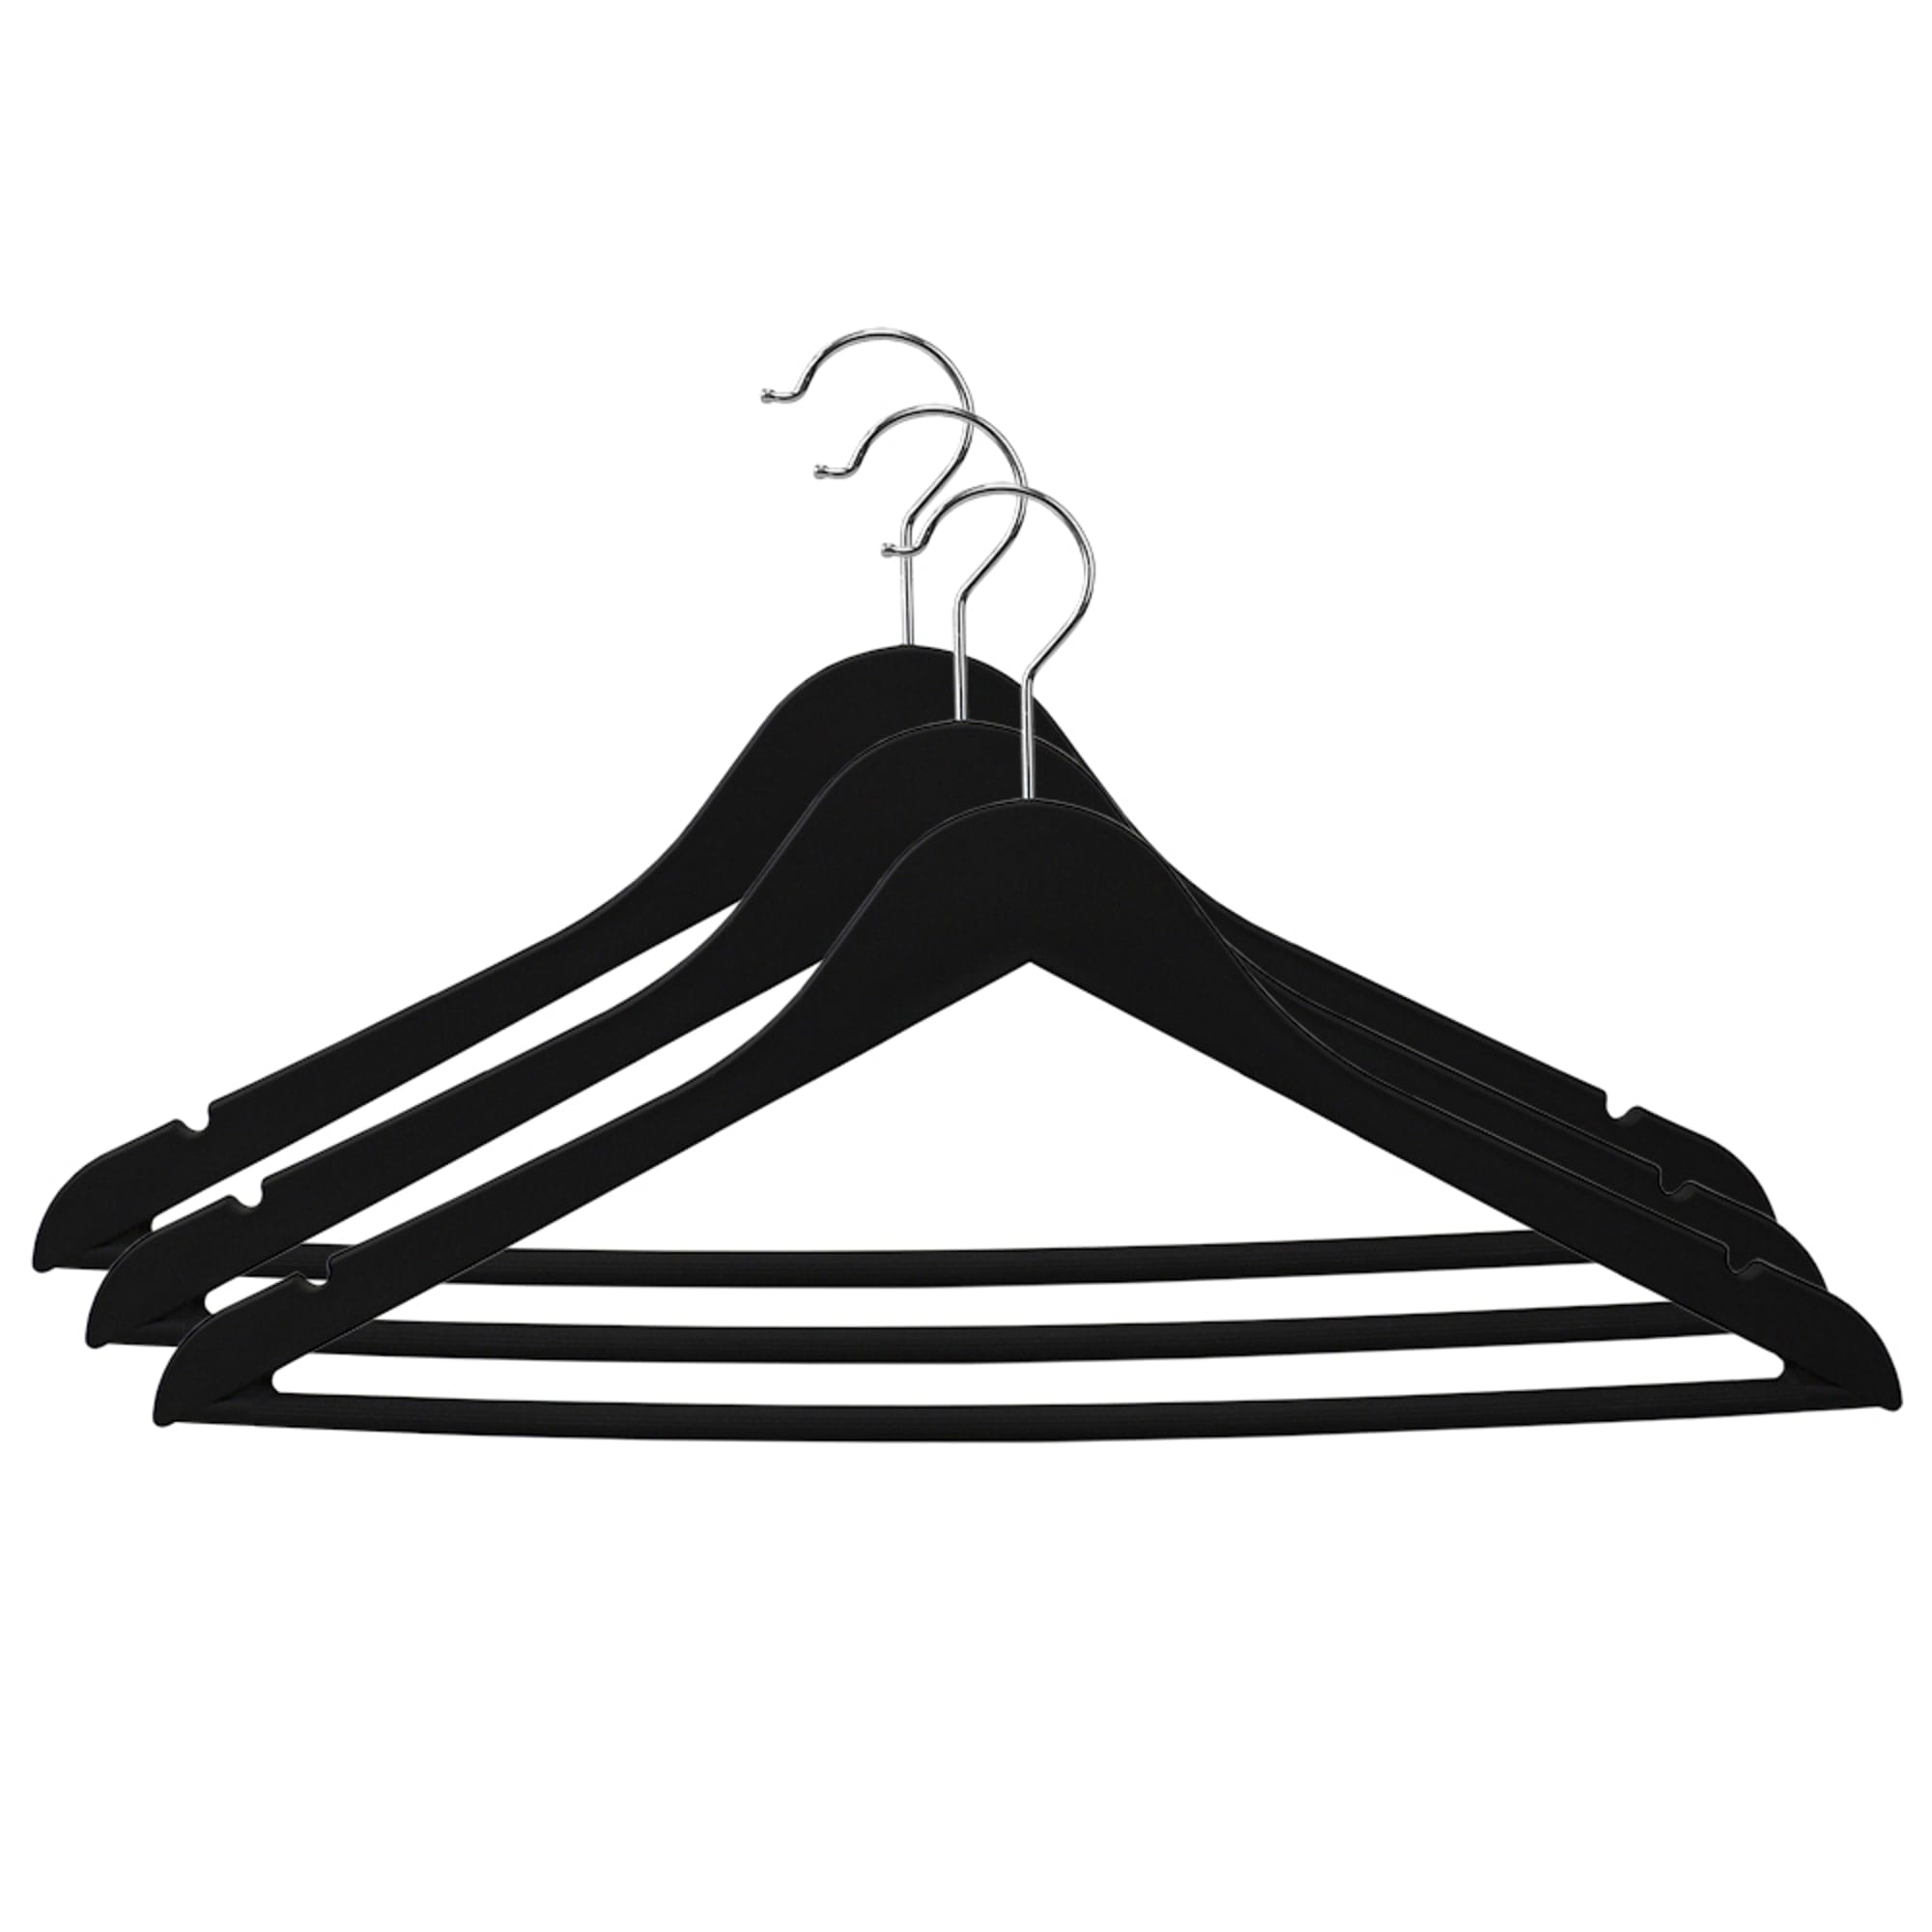 Rebrilliant Home 50 Piece Plastic Non Slip Hanger in Black and Gray Rebrilliant